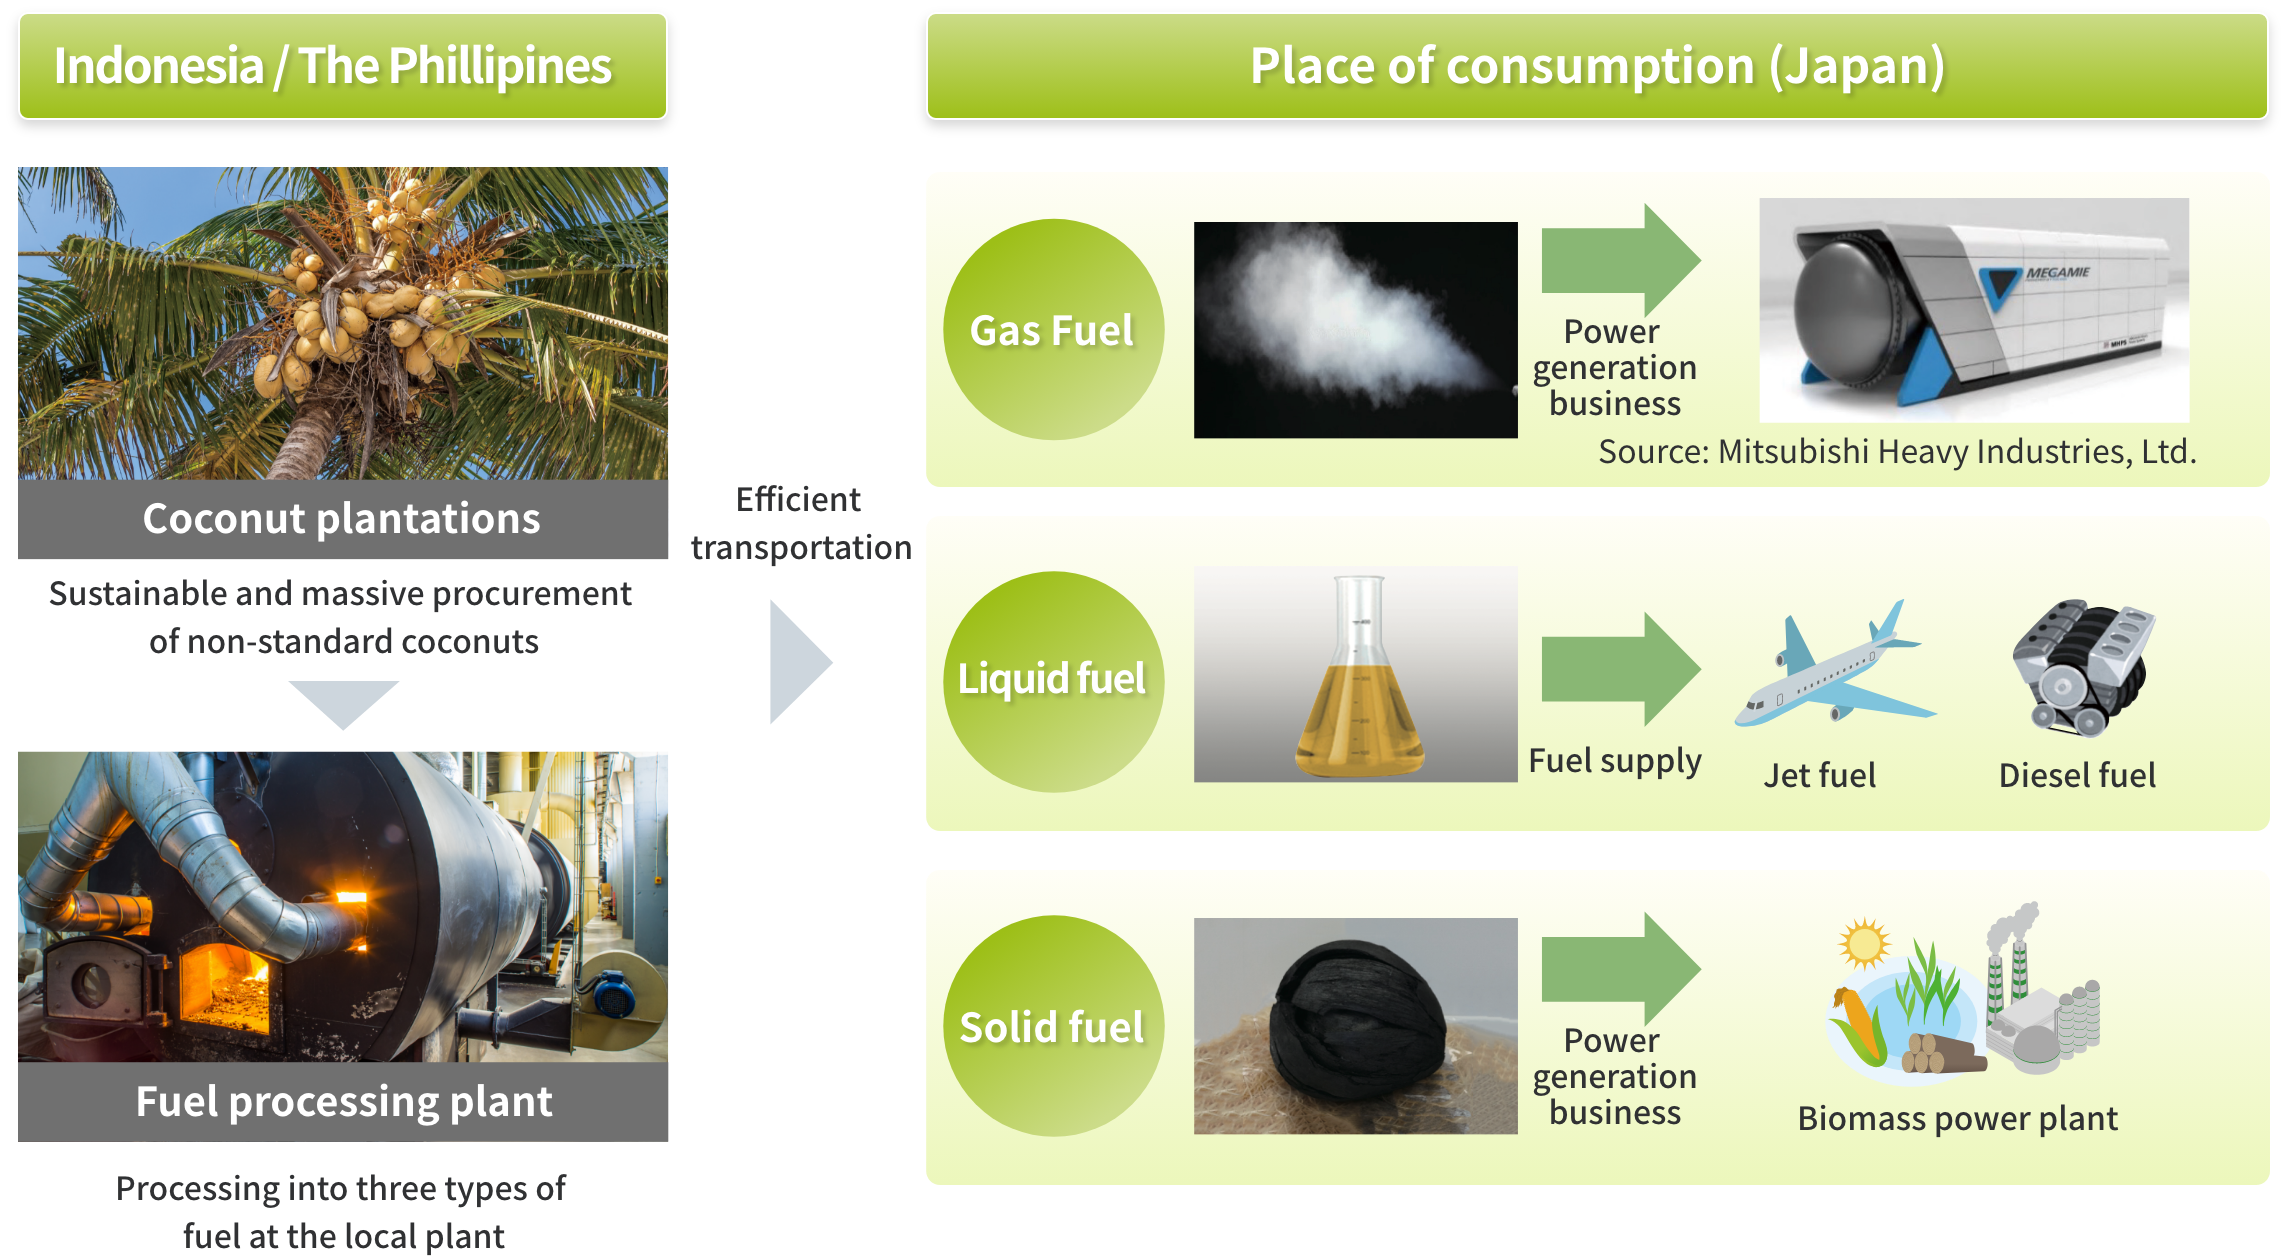 インドネシア・フィリピン 消費地（日本等）ココナッツ農園 大量の規格外ココナッツを安定的に調達燃料加工工場 現地工場にて3種類の燃料に加工 気体燃料 液体燃料 固体燃料